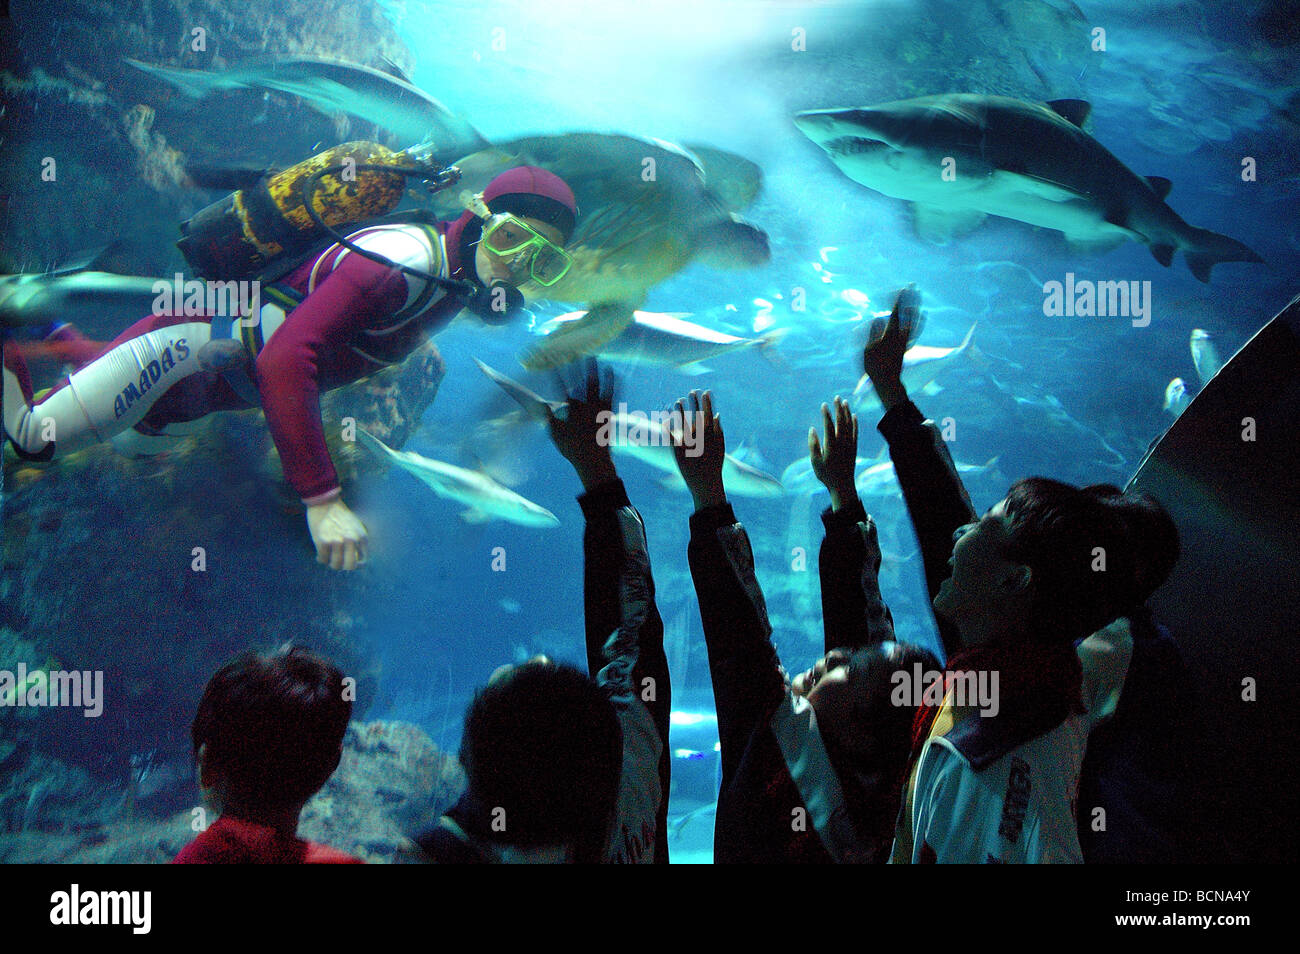 Les enfants de l'école avec excitation agitant à diver en aquarium des requins dans l'océan, l'Aquarium de Shanghai Shanghai, Chine Banque D'Images